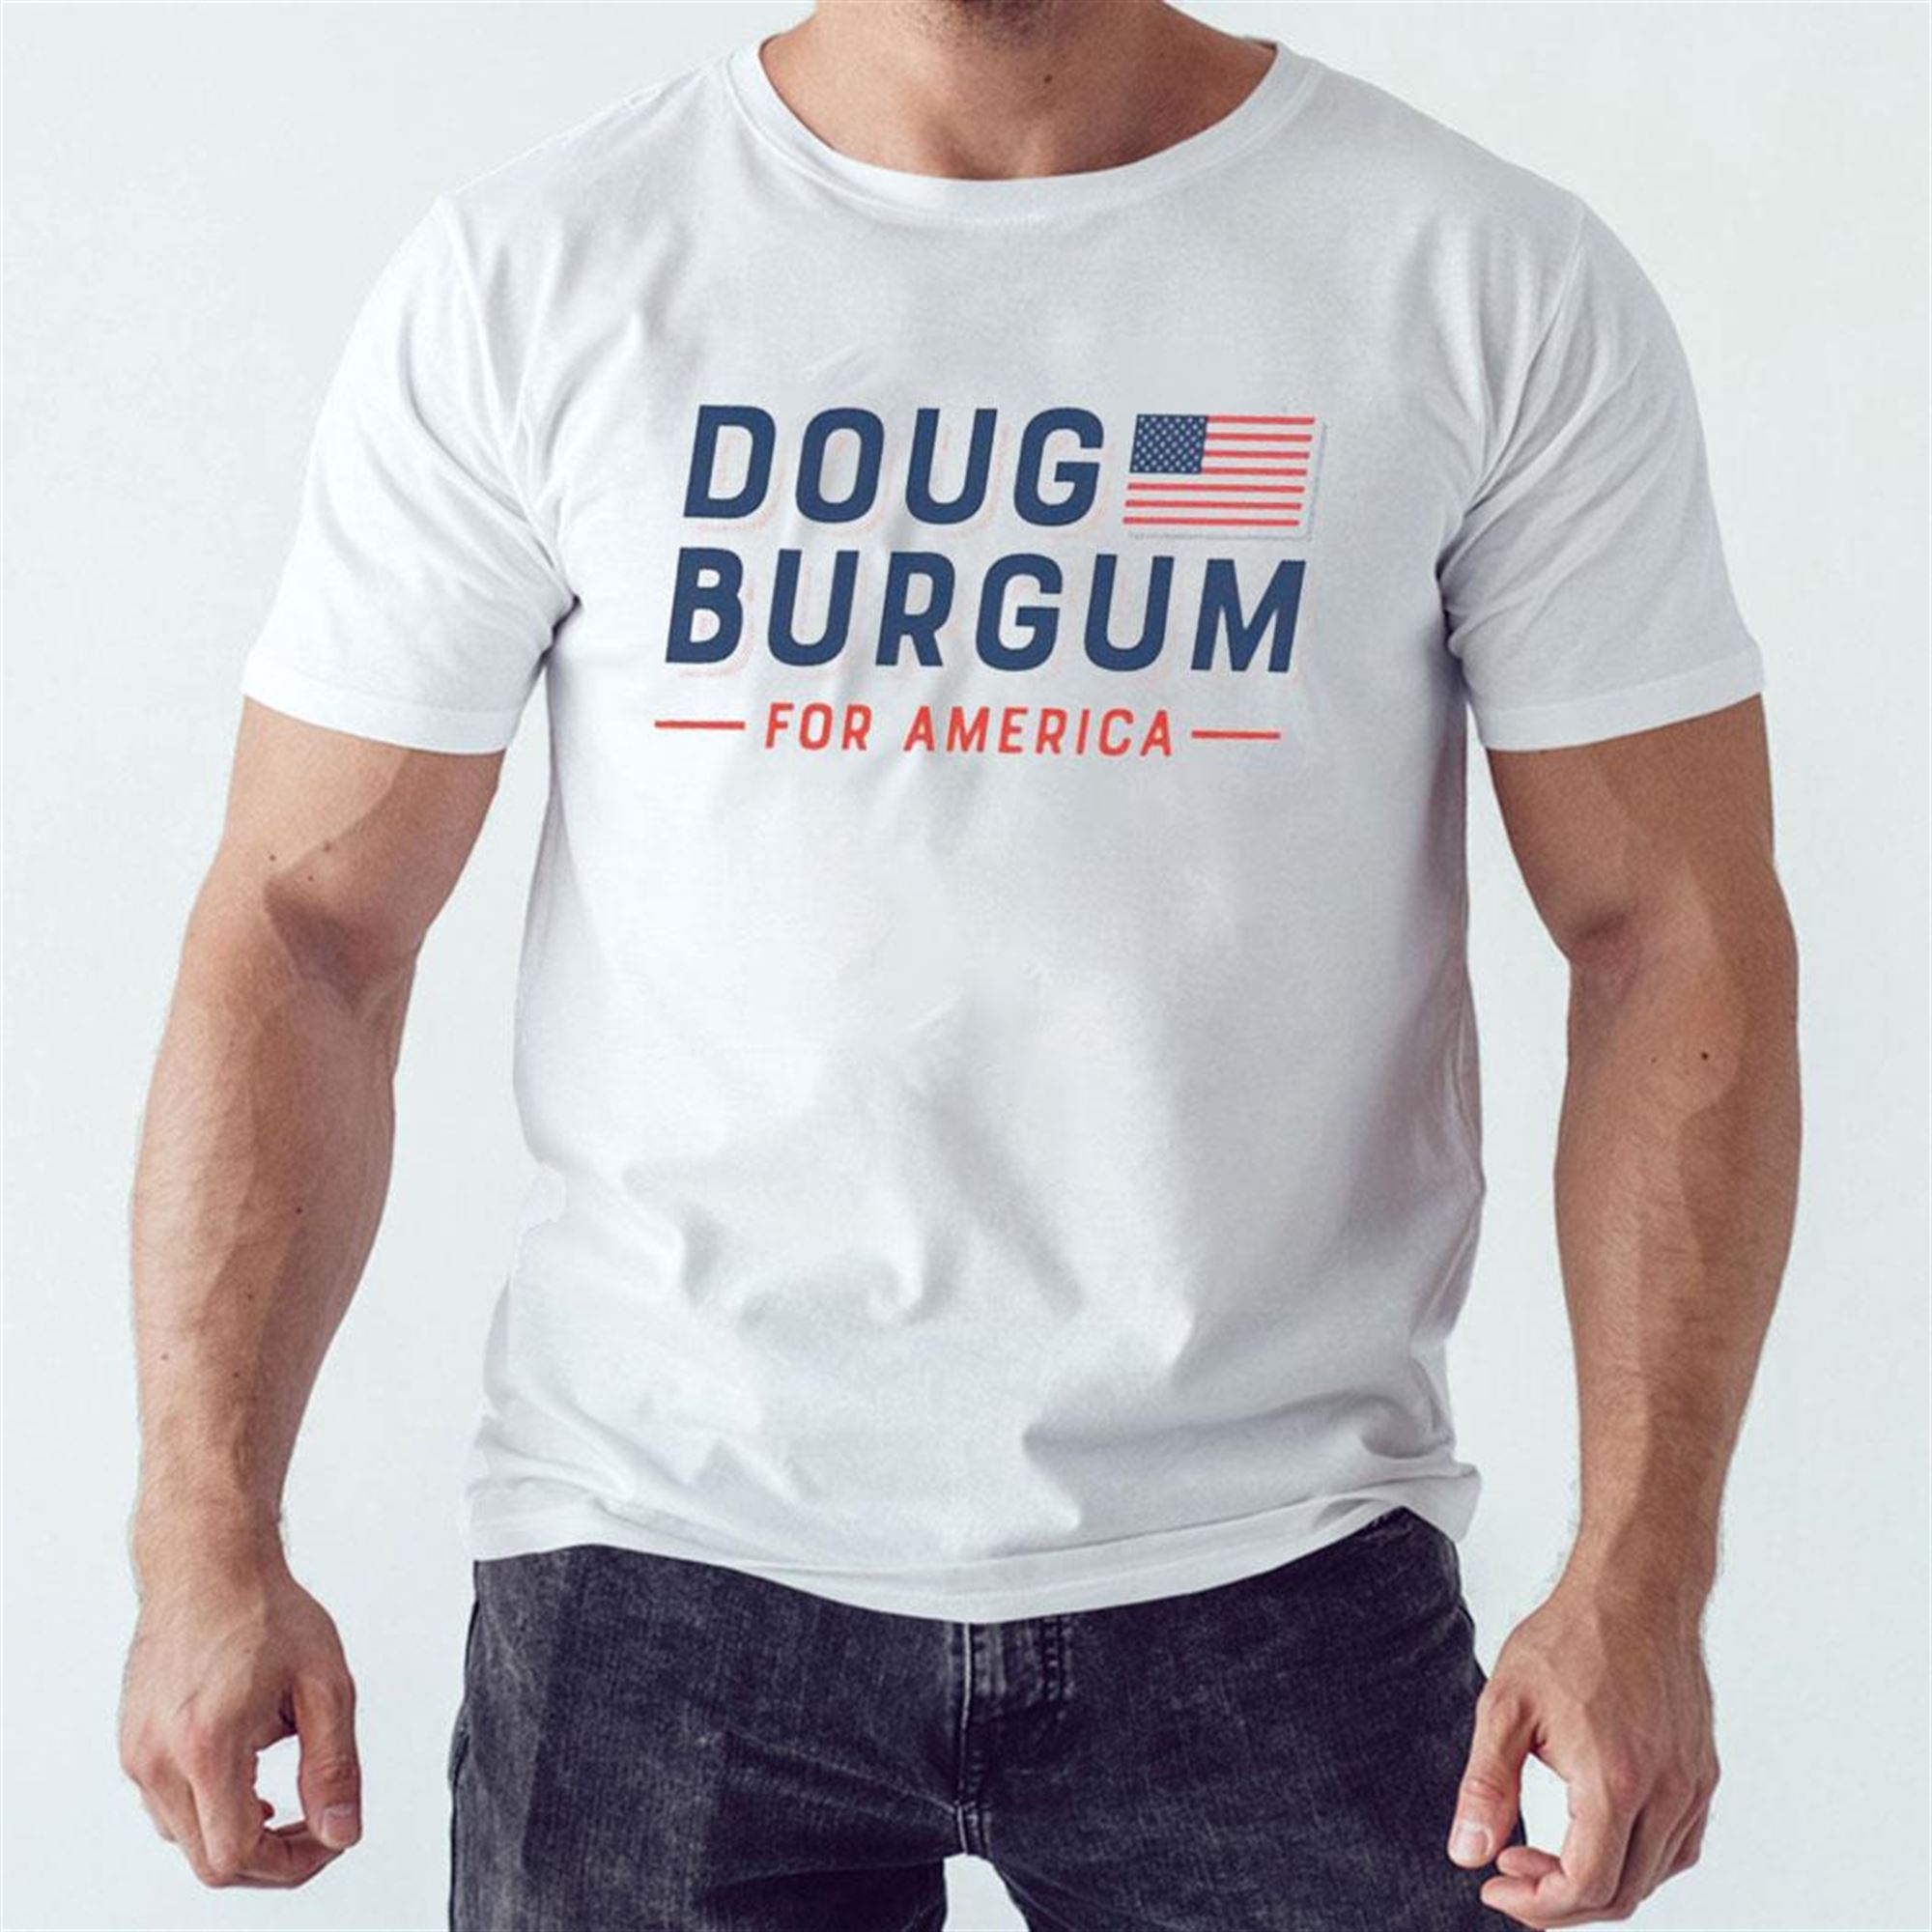 Doug Burgum For America Shirt